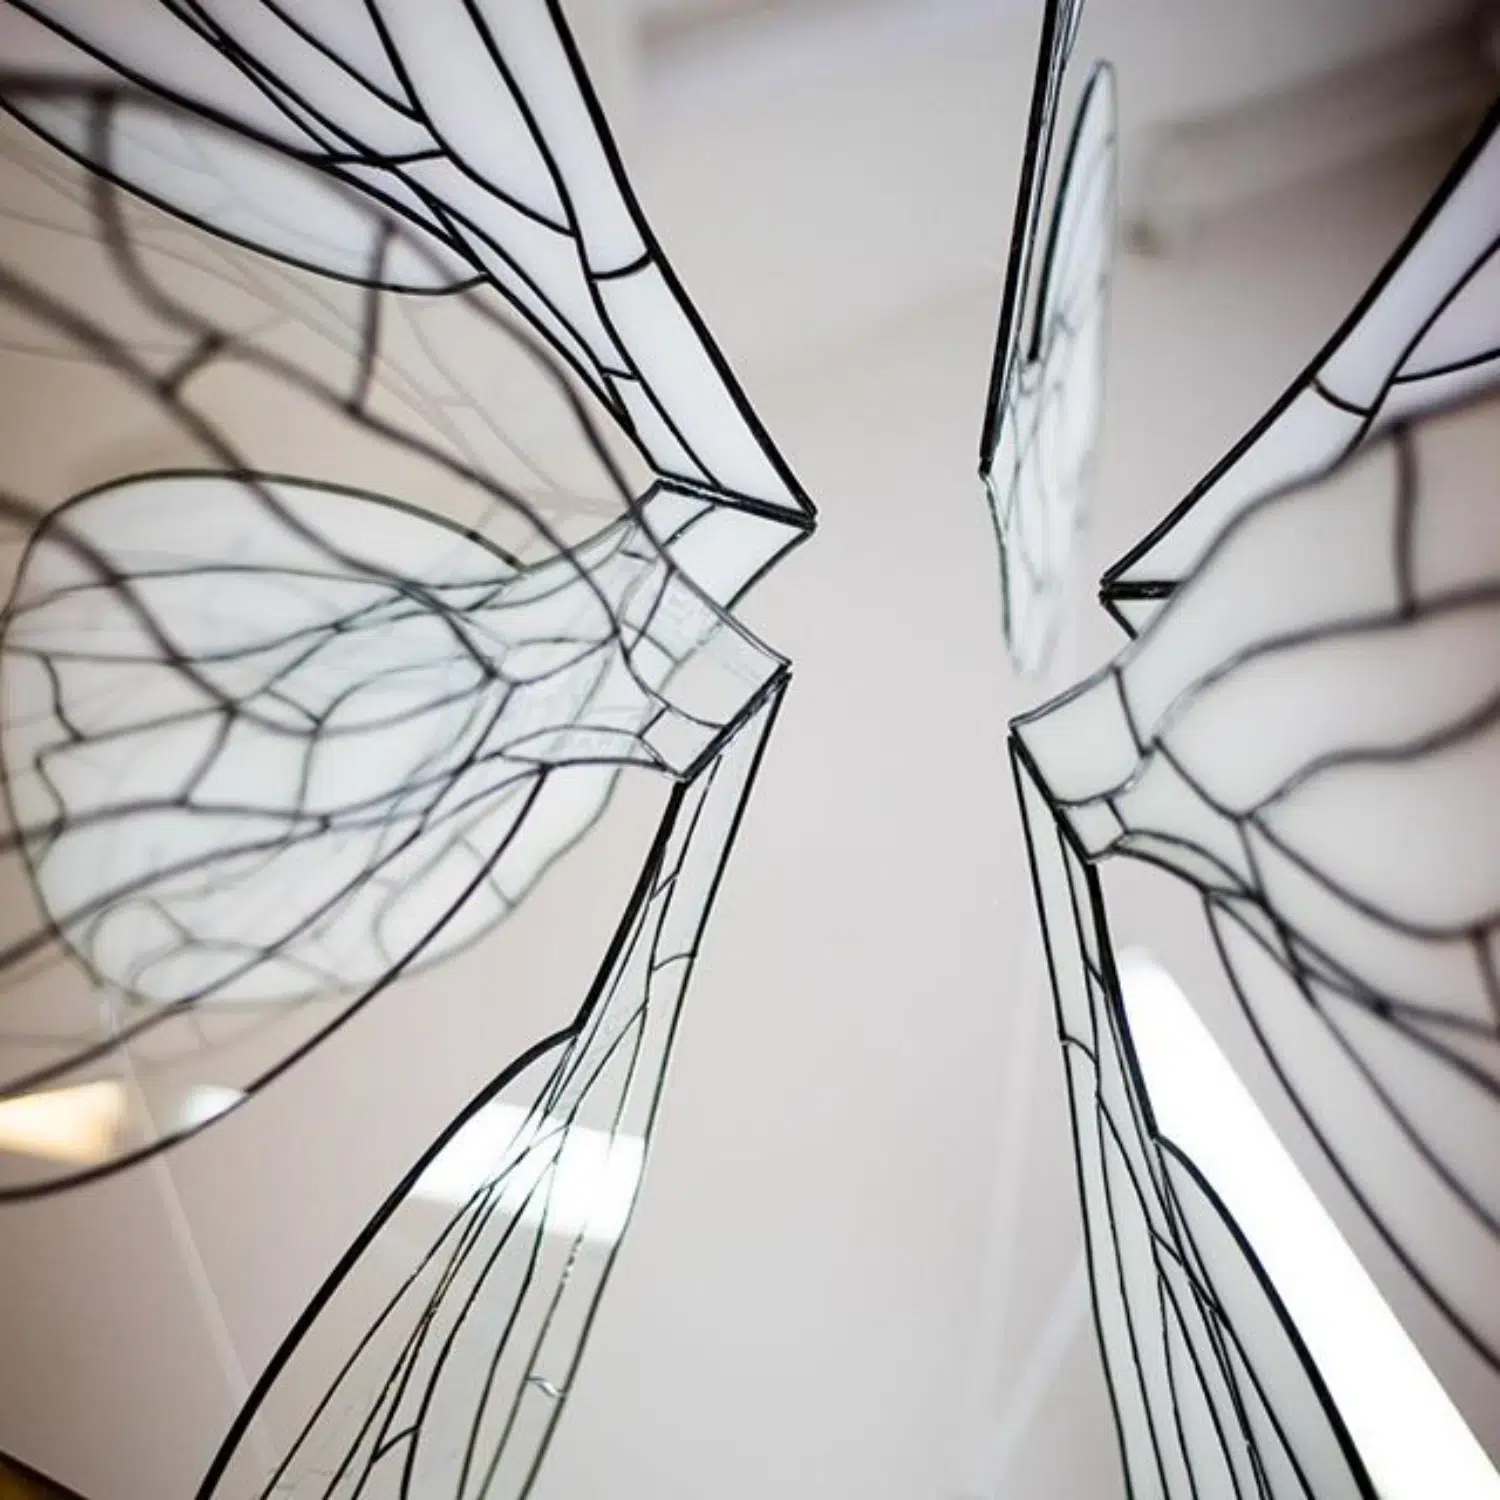 Gros plan de l'installation d'ailes en vitrail déposées verticalement et en cercle sur un miroir.